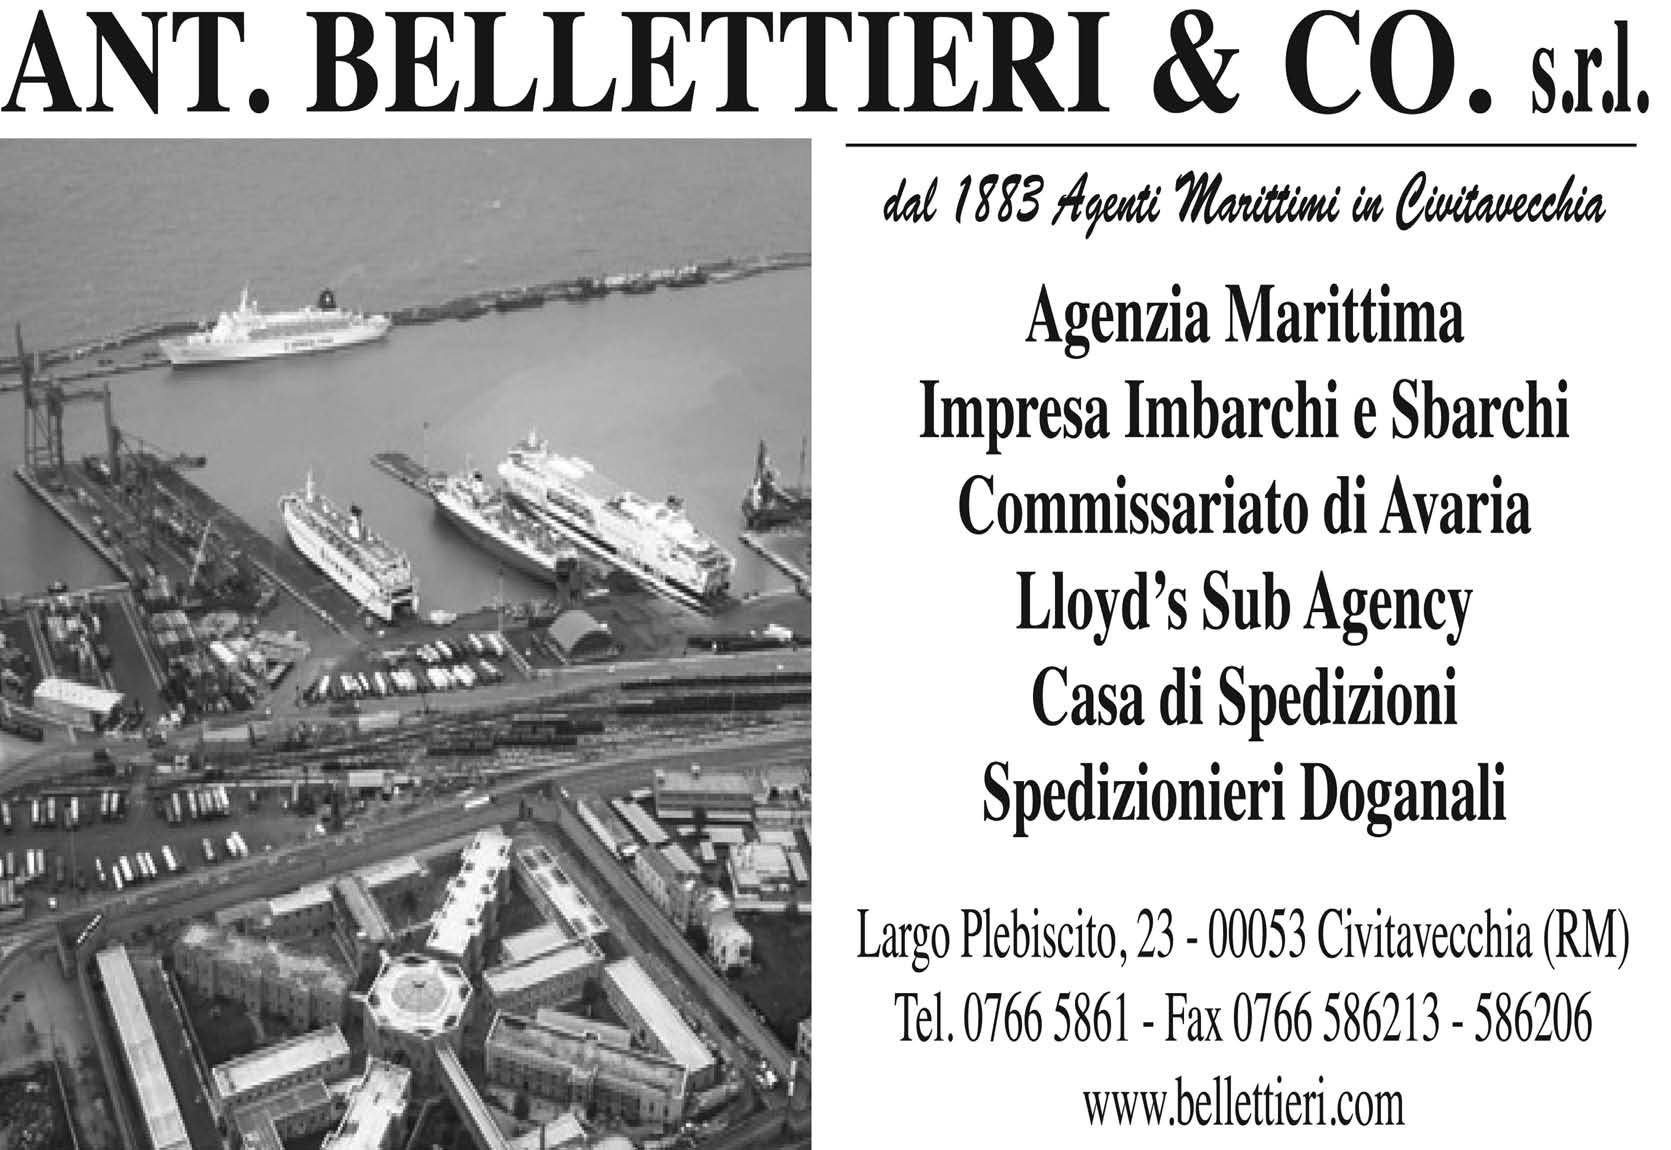 LIVORNO, GIOVEDI 1 OTTOBRE 2015 PAG. 7 partenze da venezia (pref. 041) 3-10 Mn. BF Euphoria (Maersk Line), per Marsaxlok, tutto cont 5-10 Mn Msc Msc Cape Manila (Mediterranean Shipping Co.